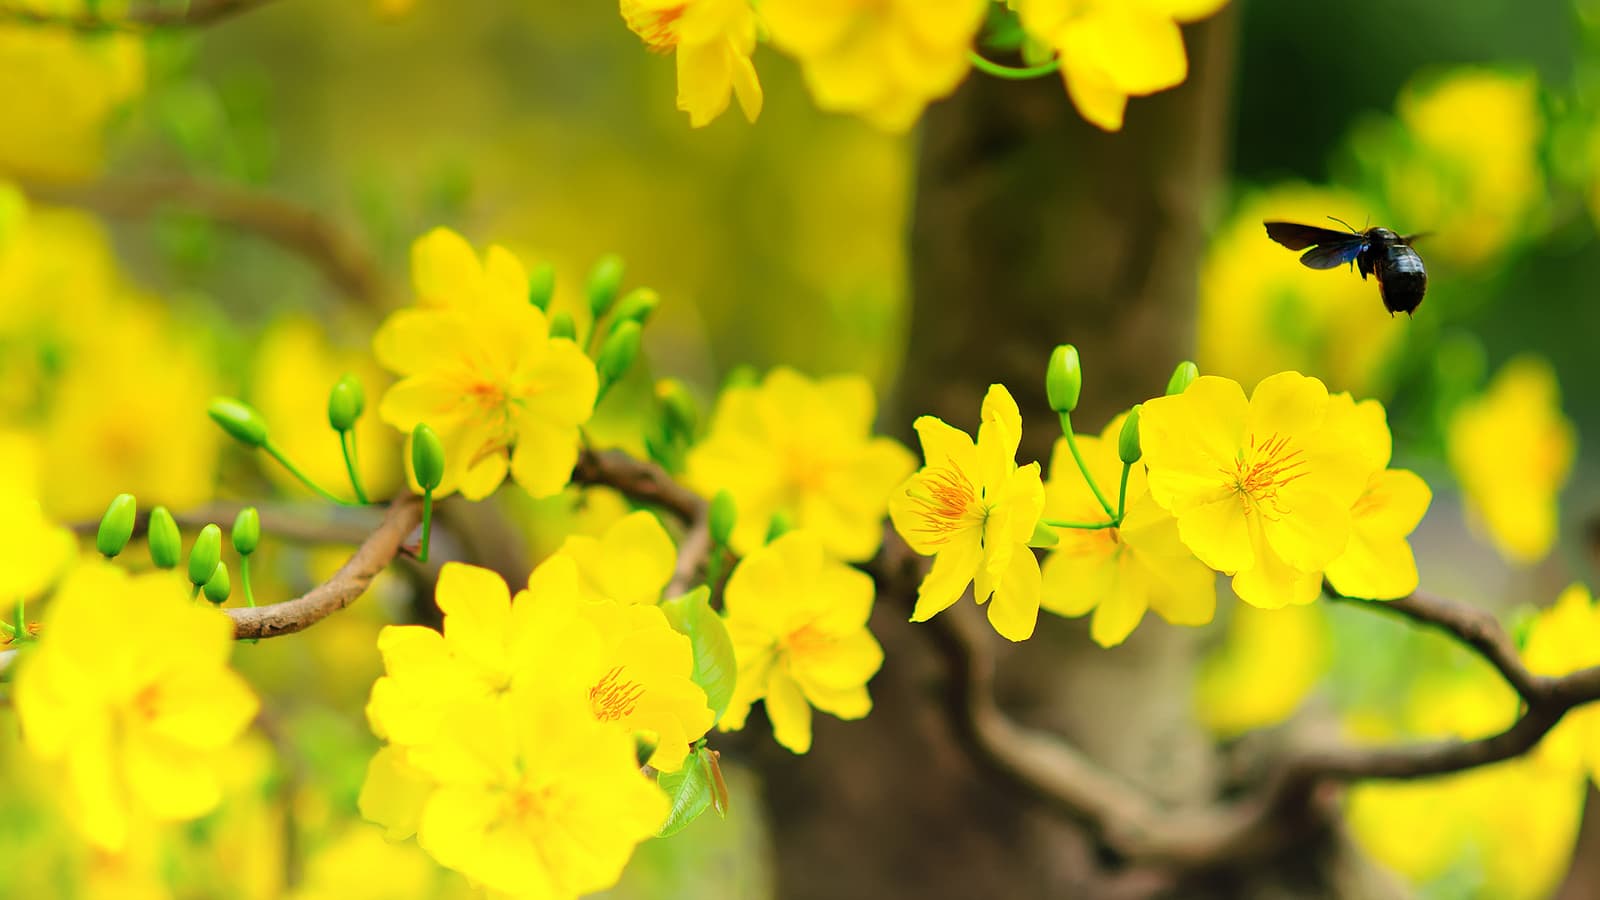 Hình ảnh hoa mai vàng đẹp, ấn tượng nhất ngày Tết-30